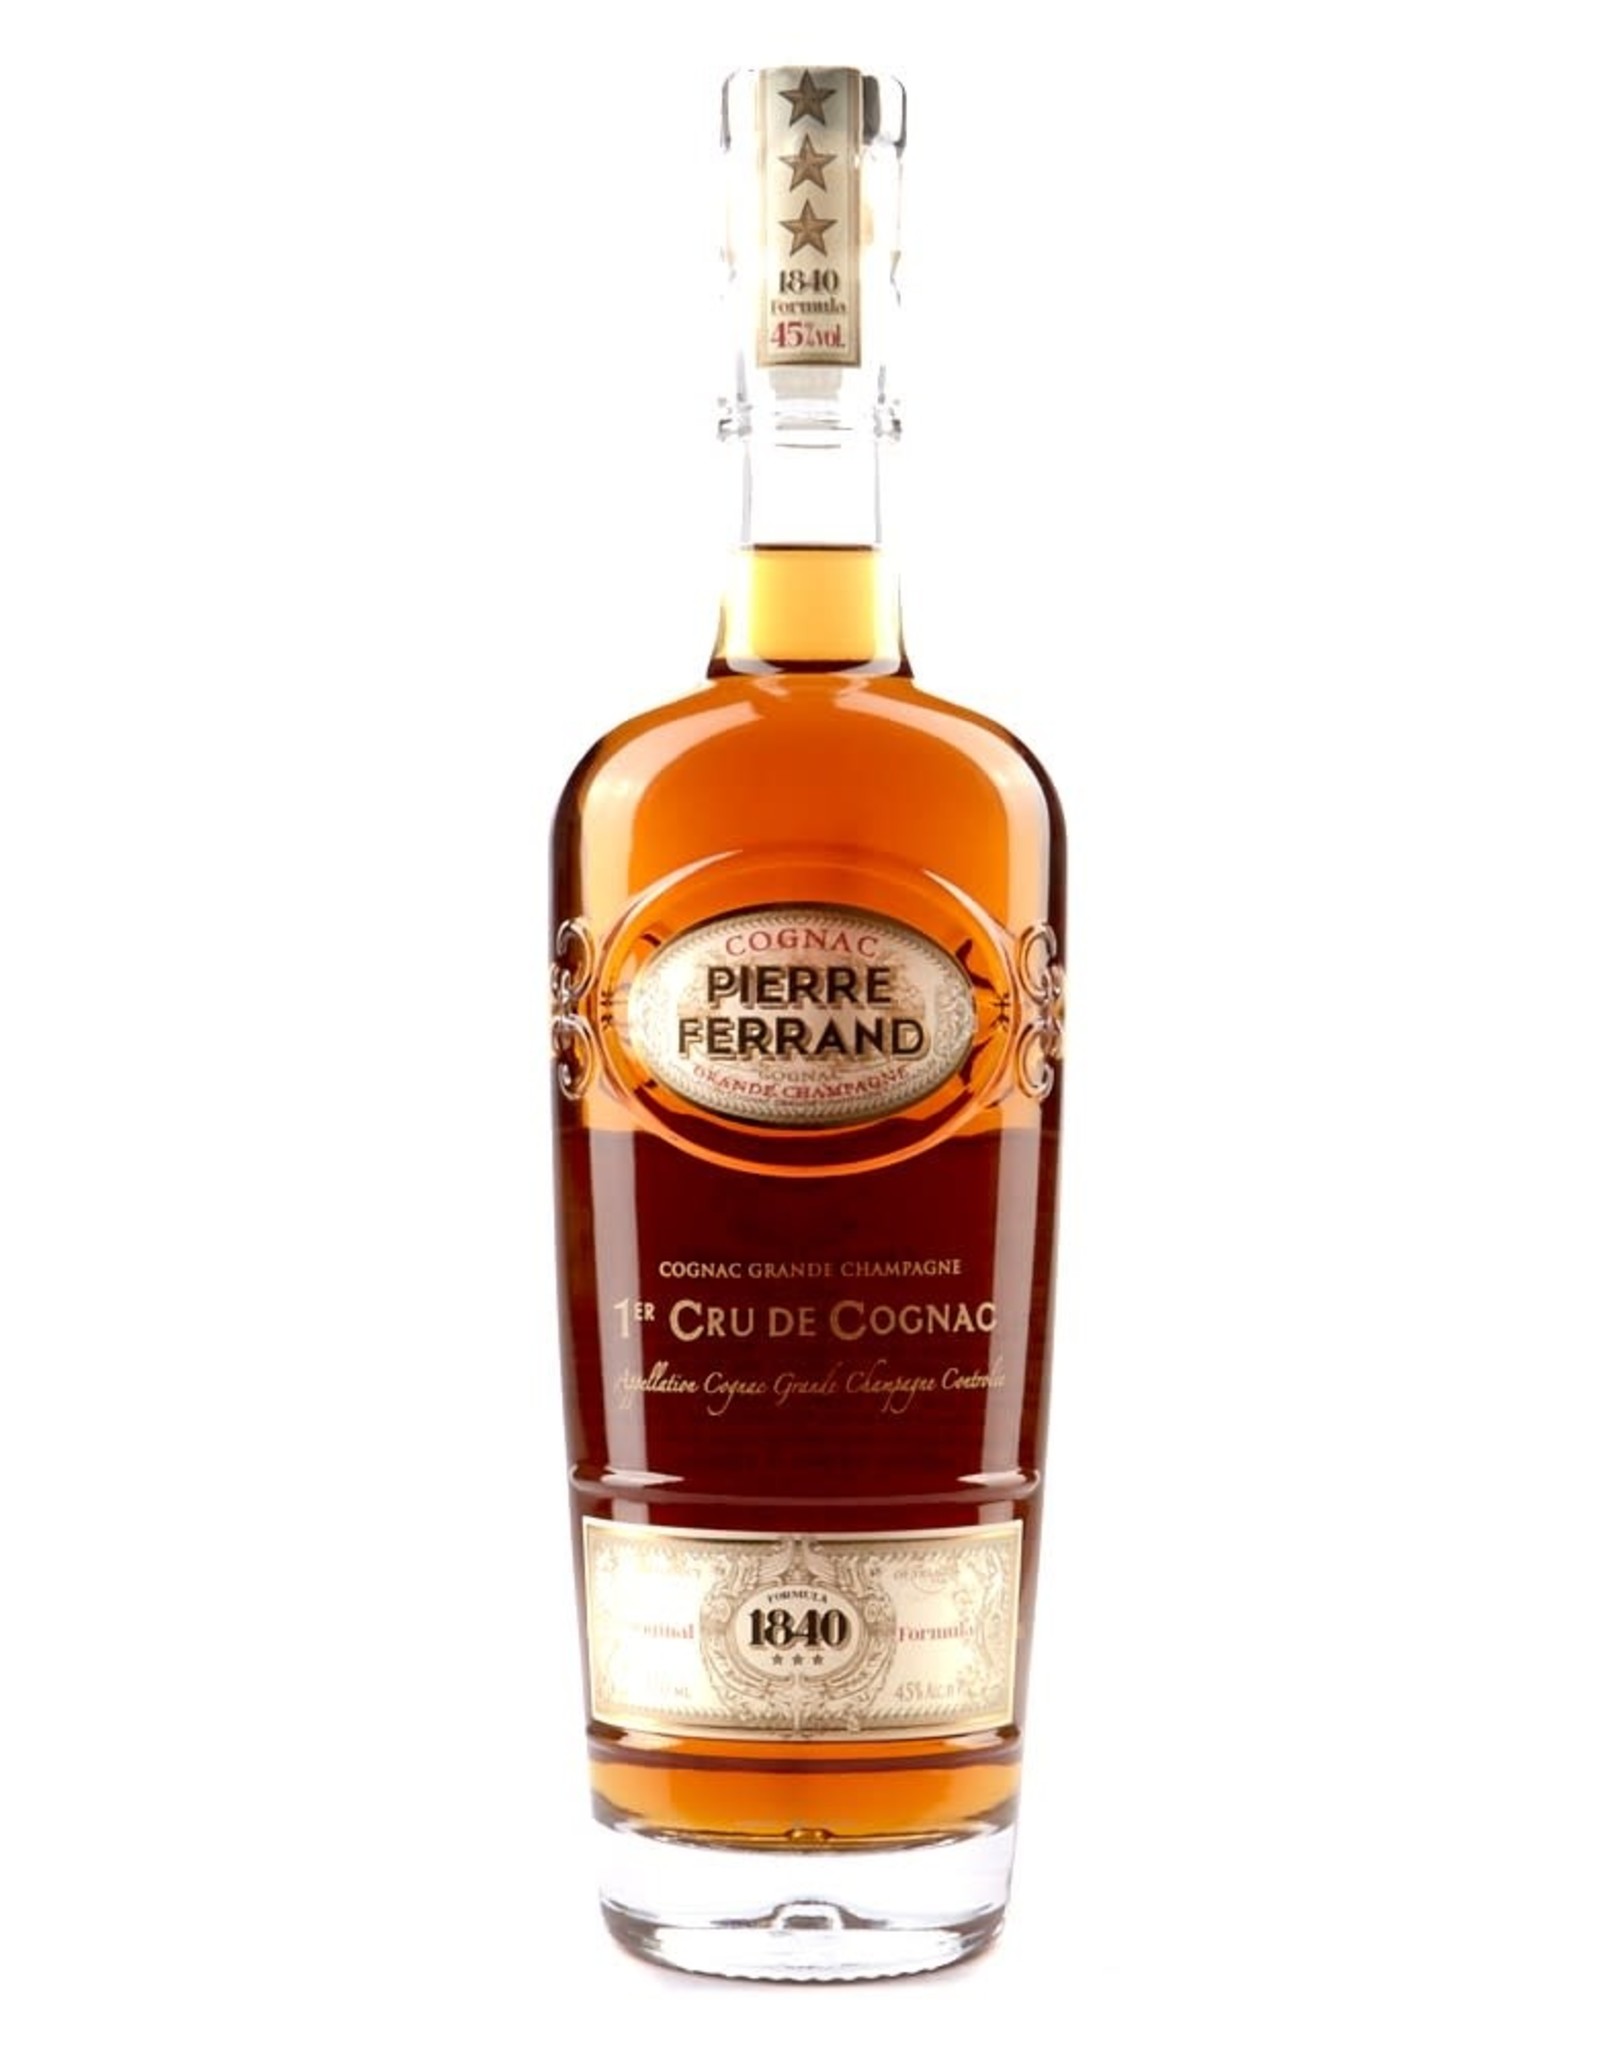 Pierre Ferrand Pierre Ferrand 1840 Cognac 750 mL